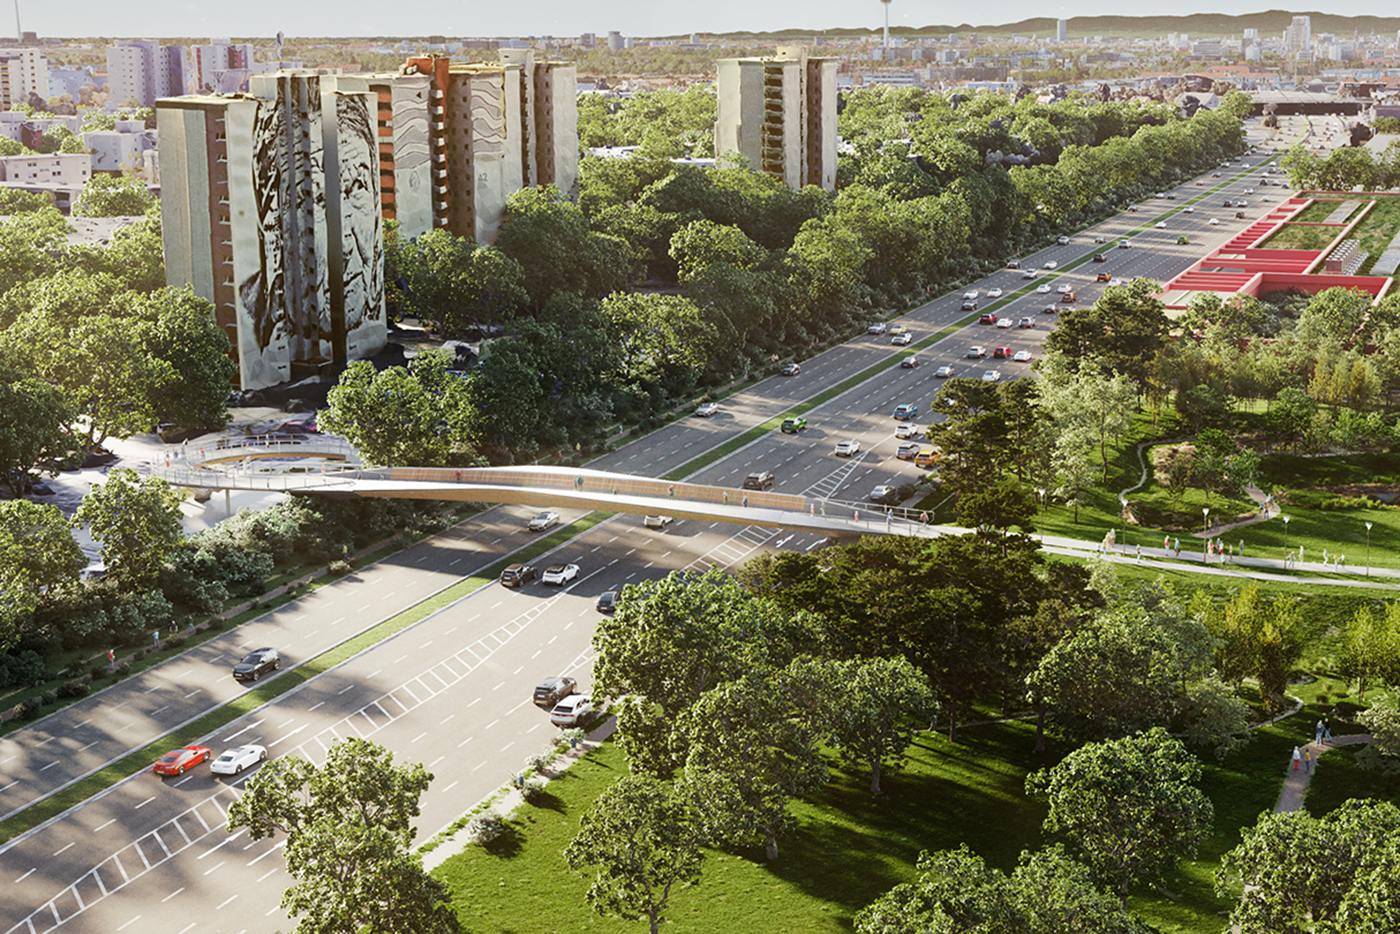 Visualisierung des zukünftigen FRANKLIN Stegs, der autofreien Brücke über die B38. Im Hintergrund drei Hochhäuser im Stadtteil Vogelstang. Auf der rechten Seite der Columbuspark im Stadtteil FRANKLIN.